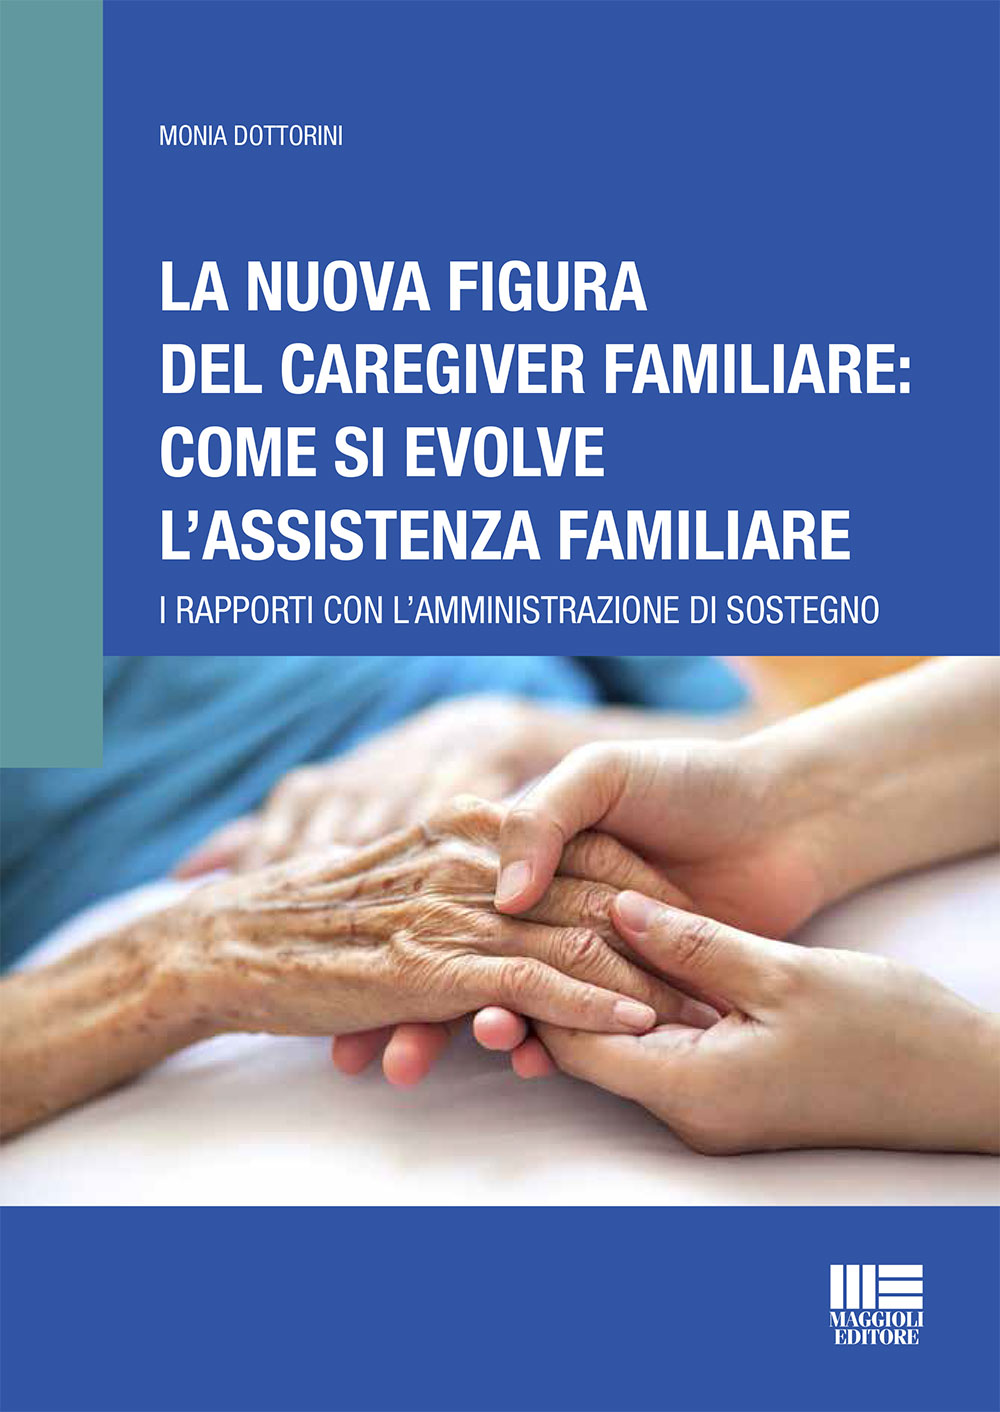 La nuova figura del caregiver familiare: come si evolve l'assistenza familiare